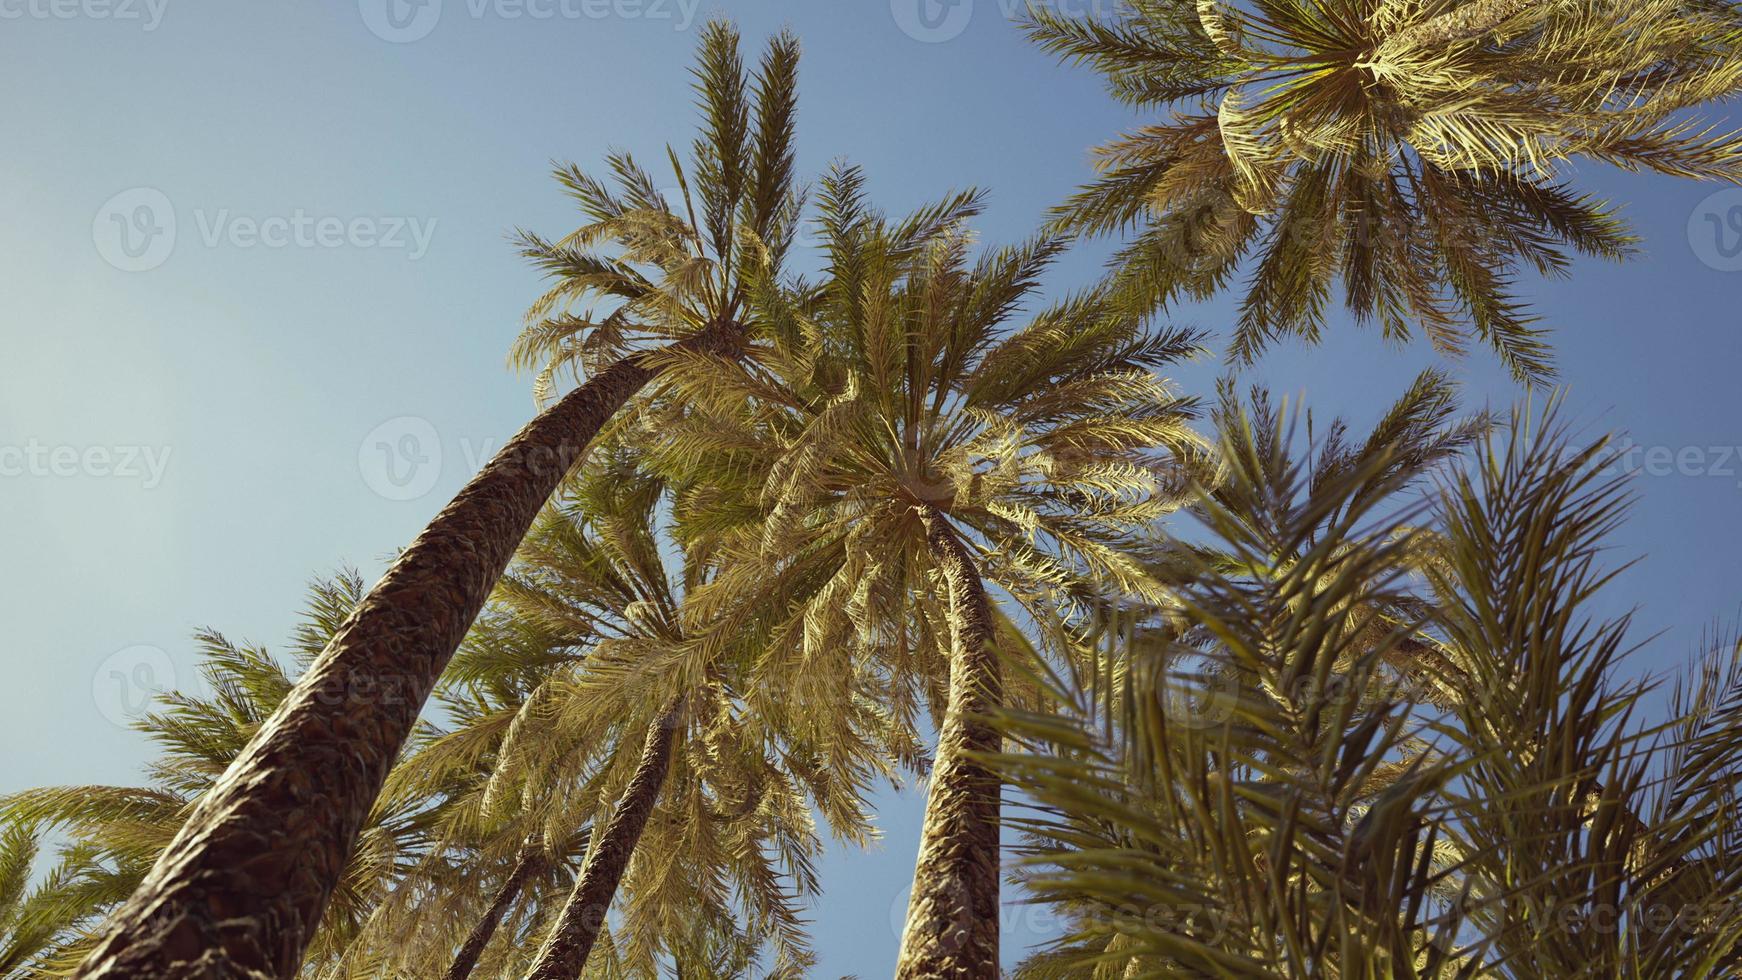 vista das palmeiras passando sob o céu azul foto